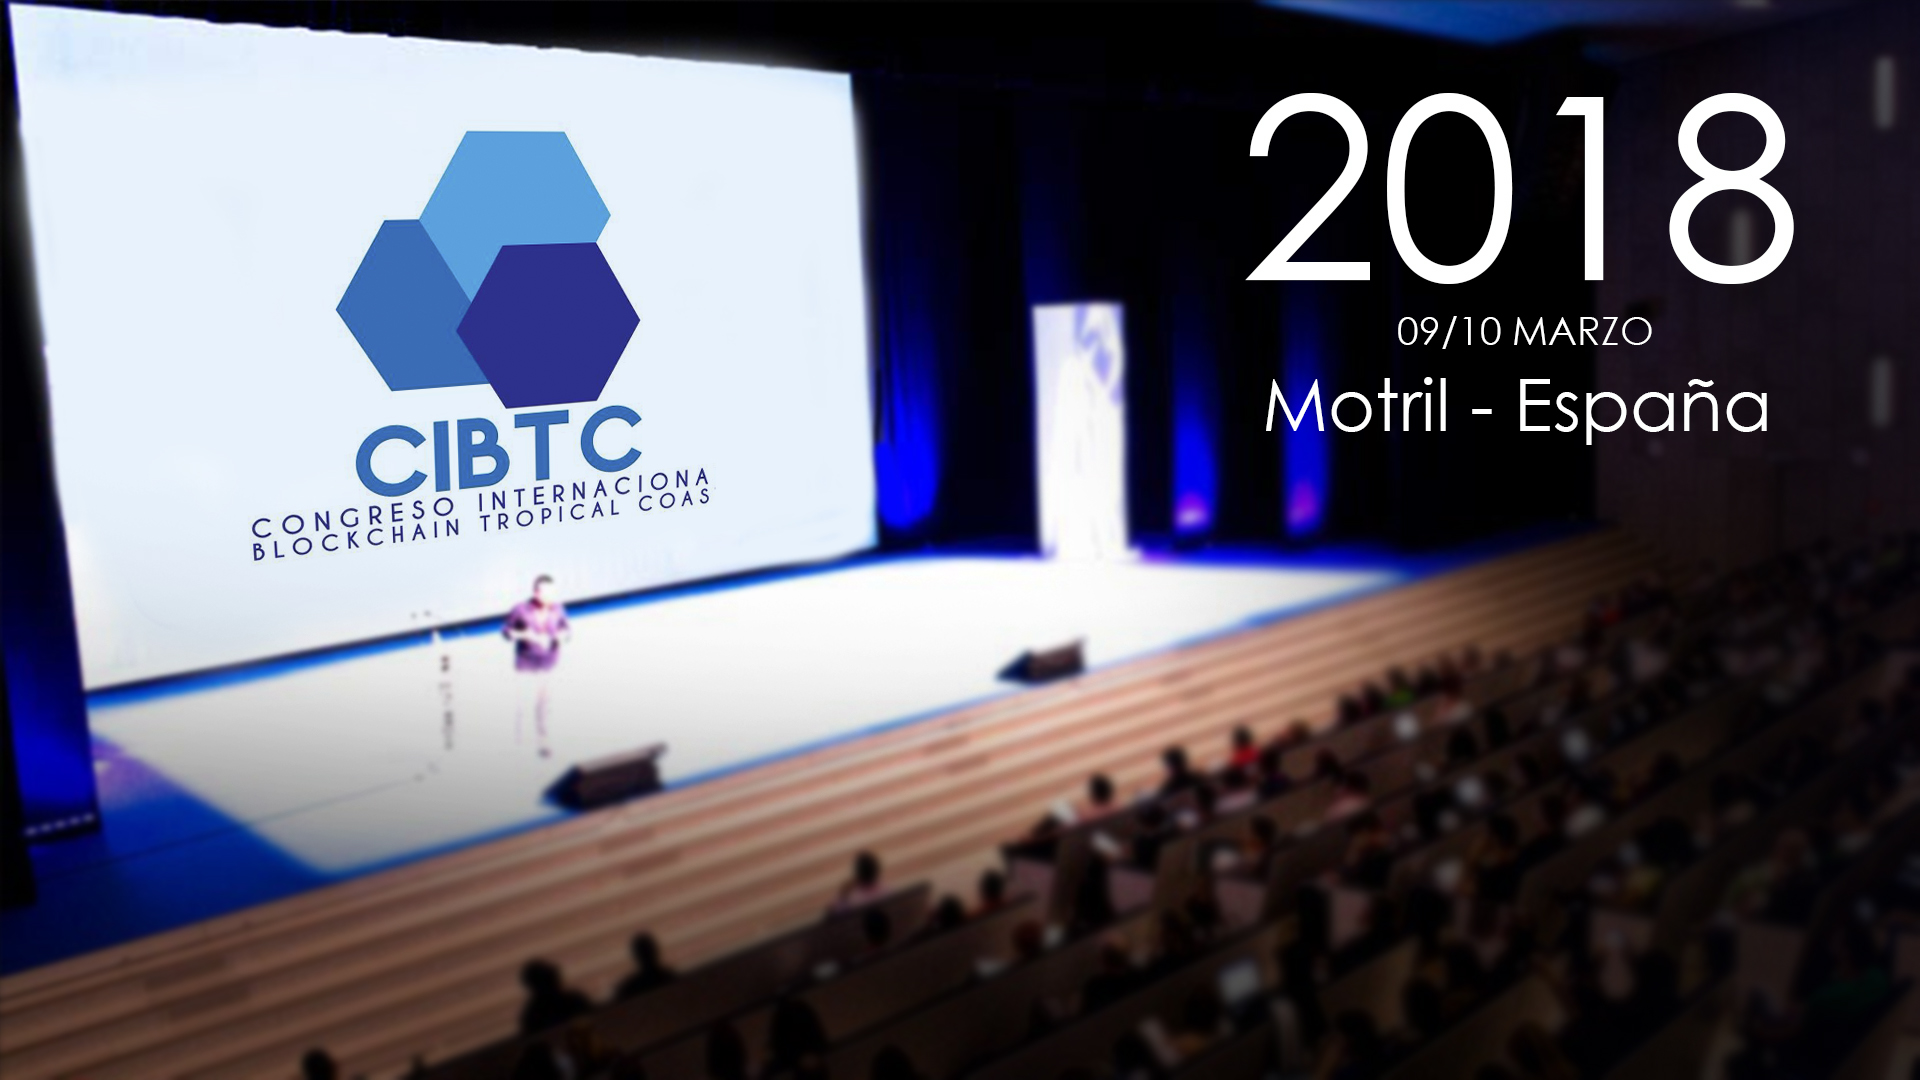 Motril será la sede del Congreso Internacional Blockchain Tropical Coast